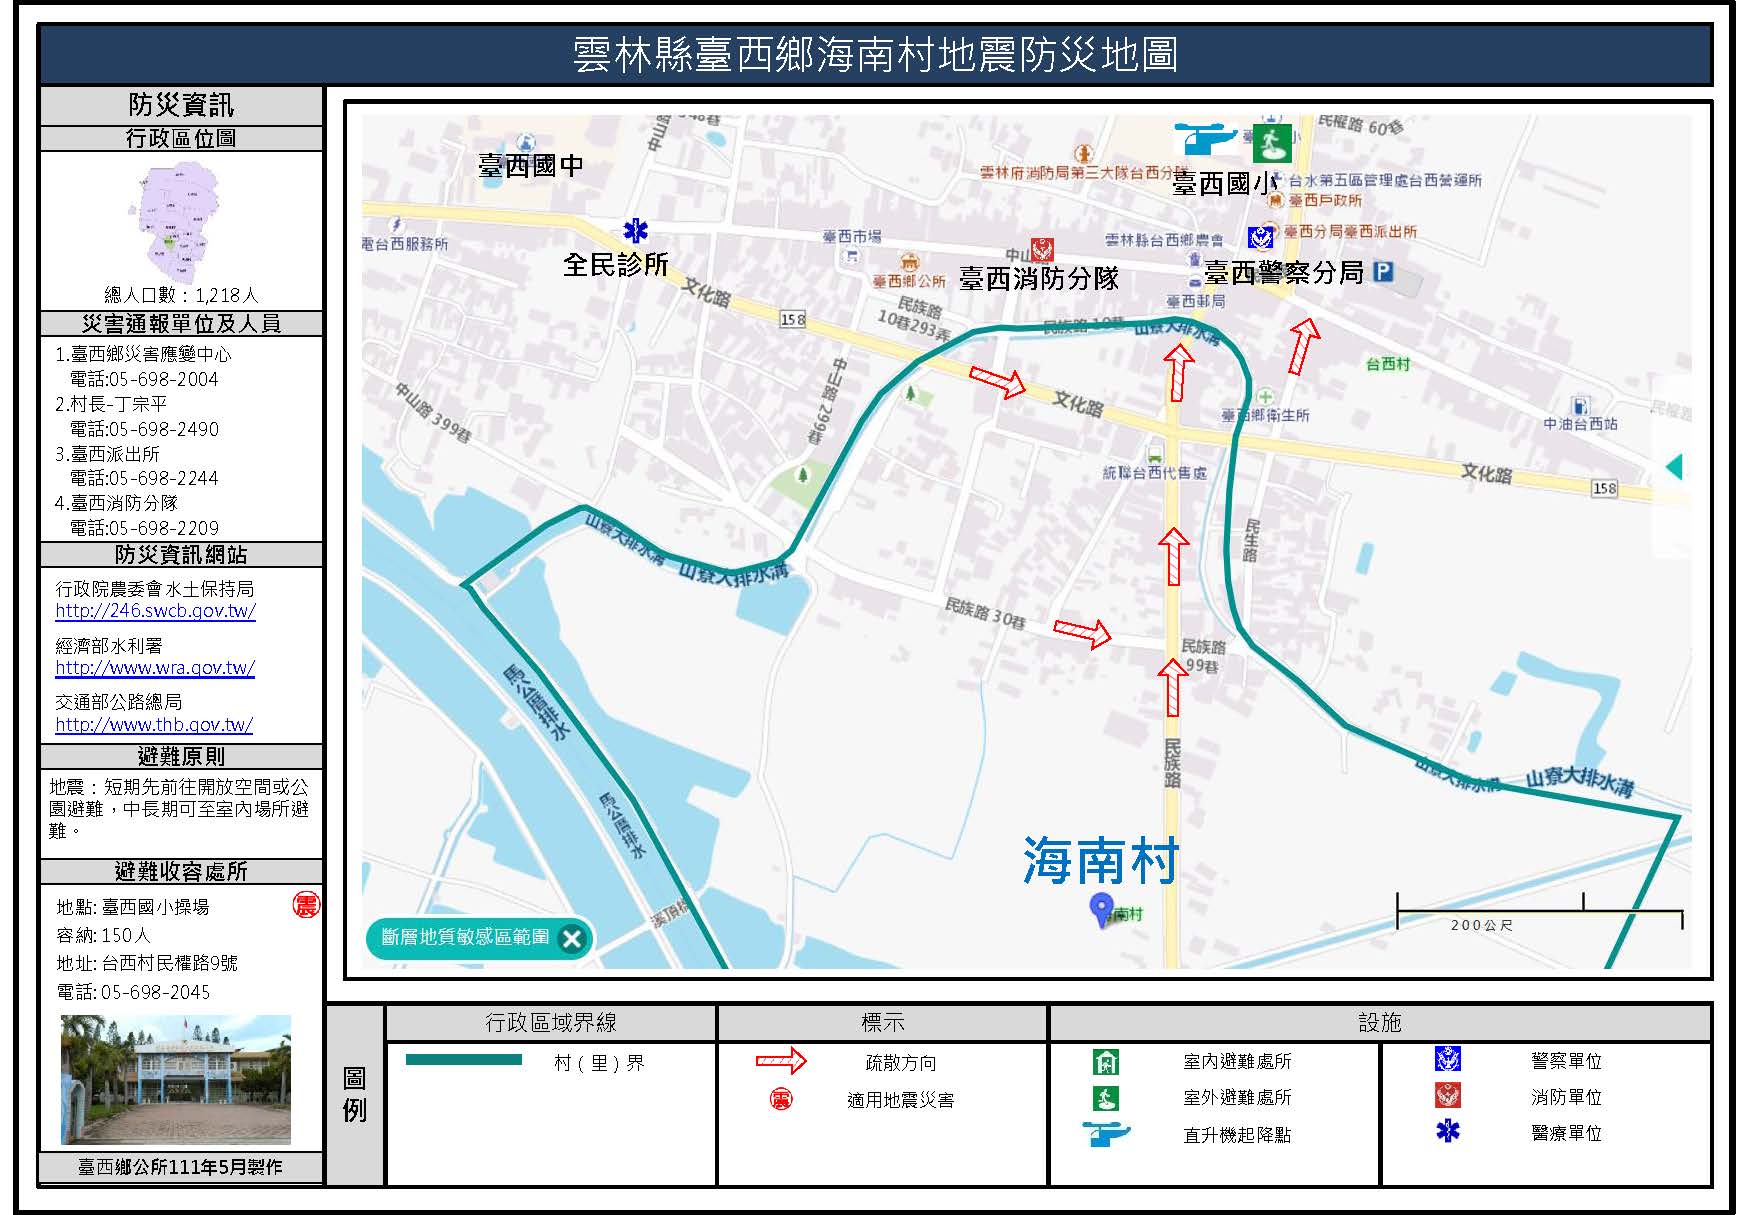 海南村地震簡易防災地圖